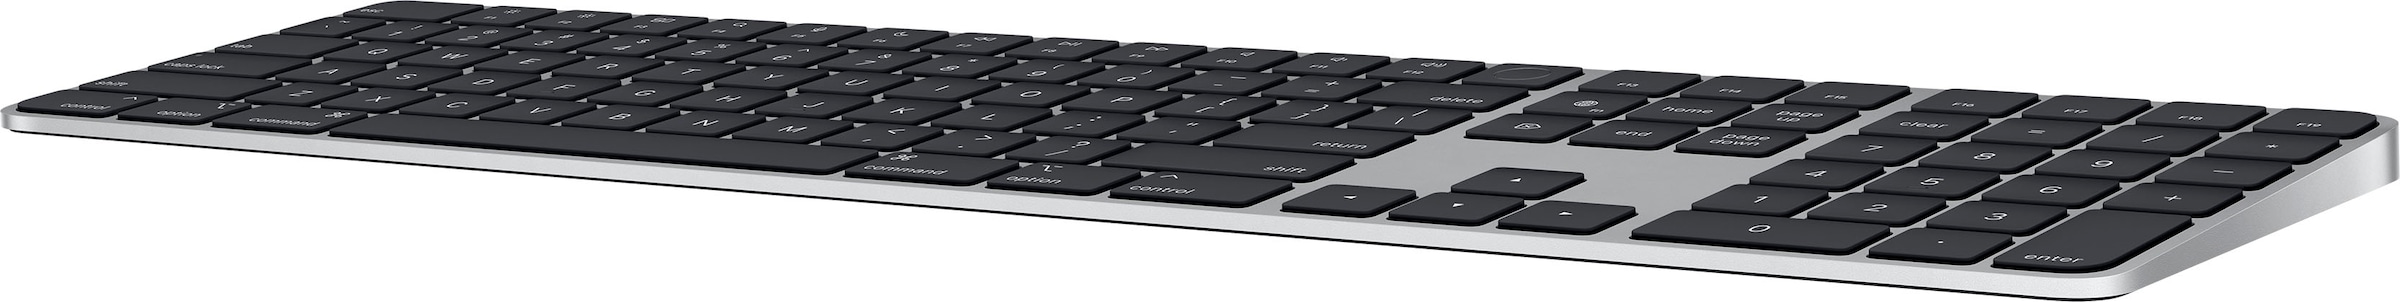 Apple Apple-Tastatur »Magic Keyboard mit Touch ID und Ziffernblock«,  (Ziffernblock-Multimedia-Tasten) jetzt im %Sale